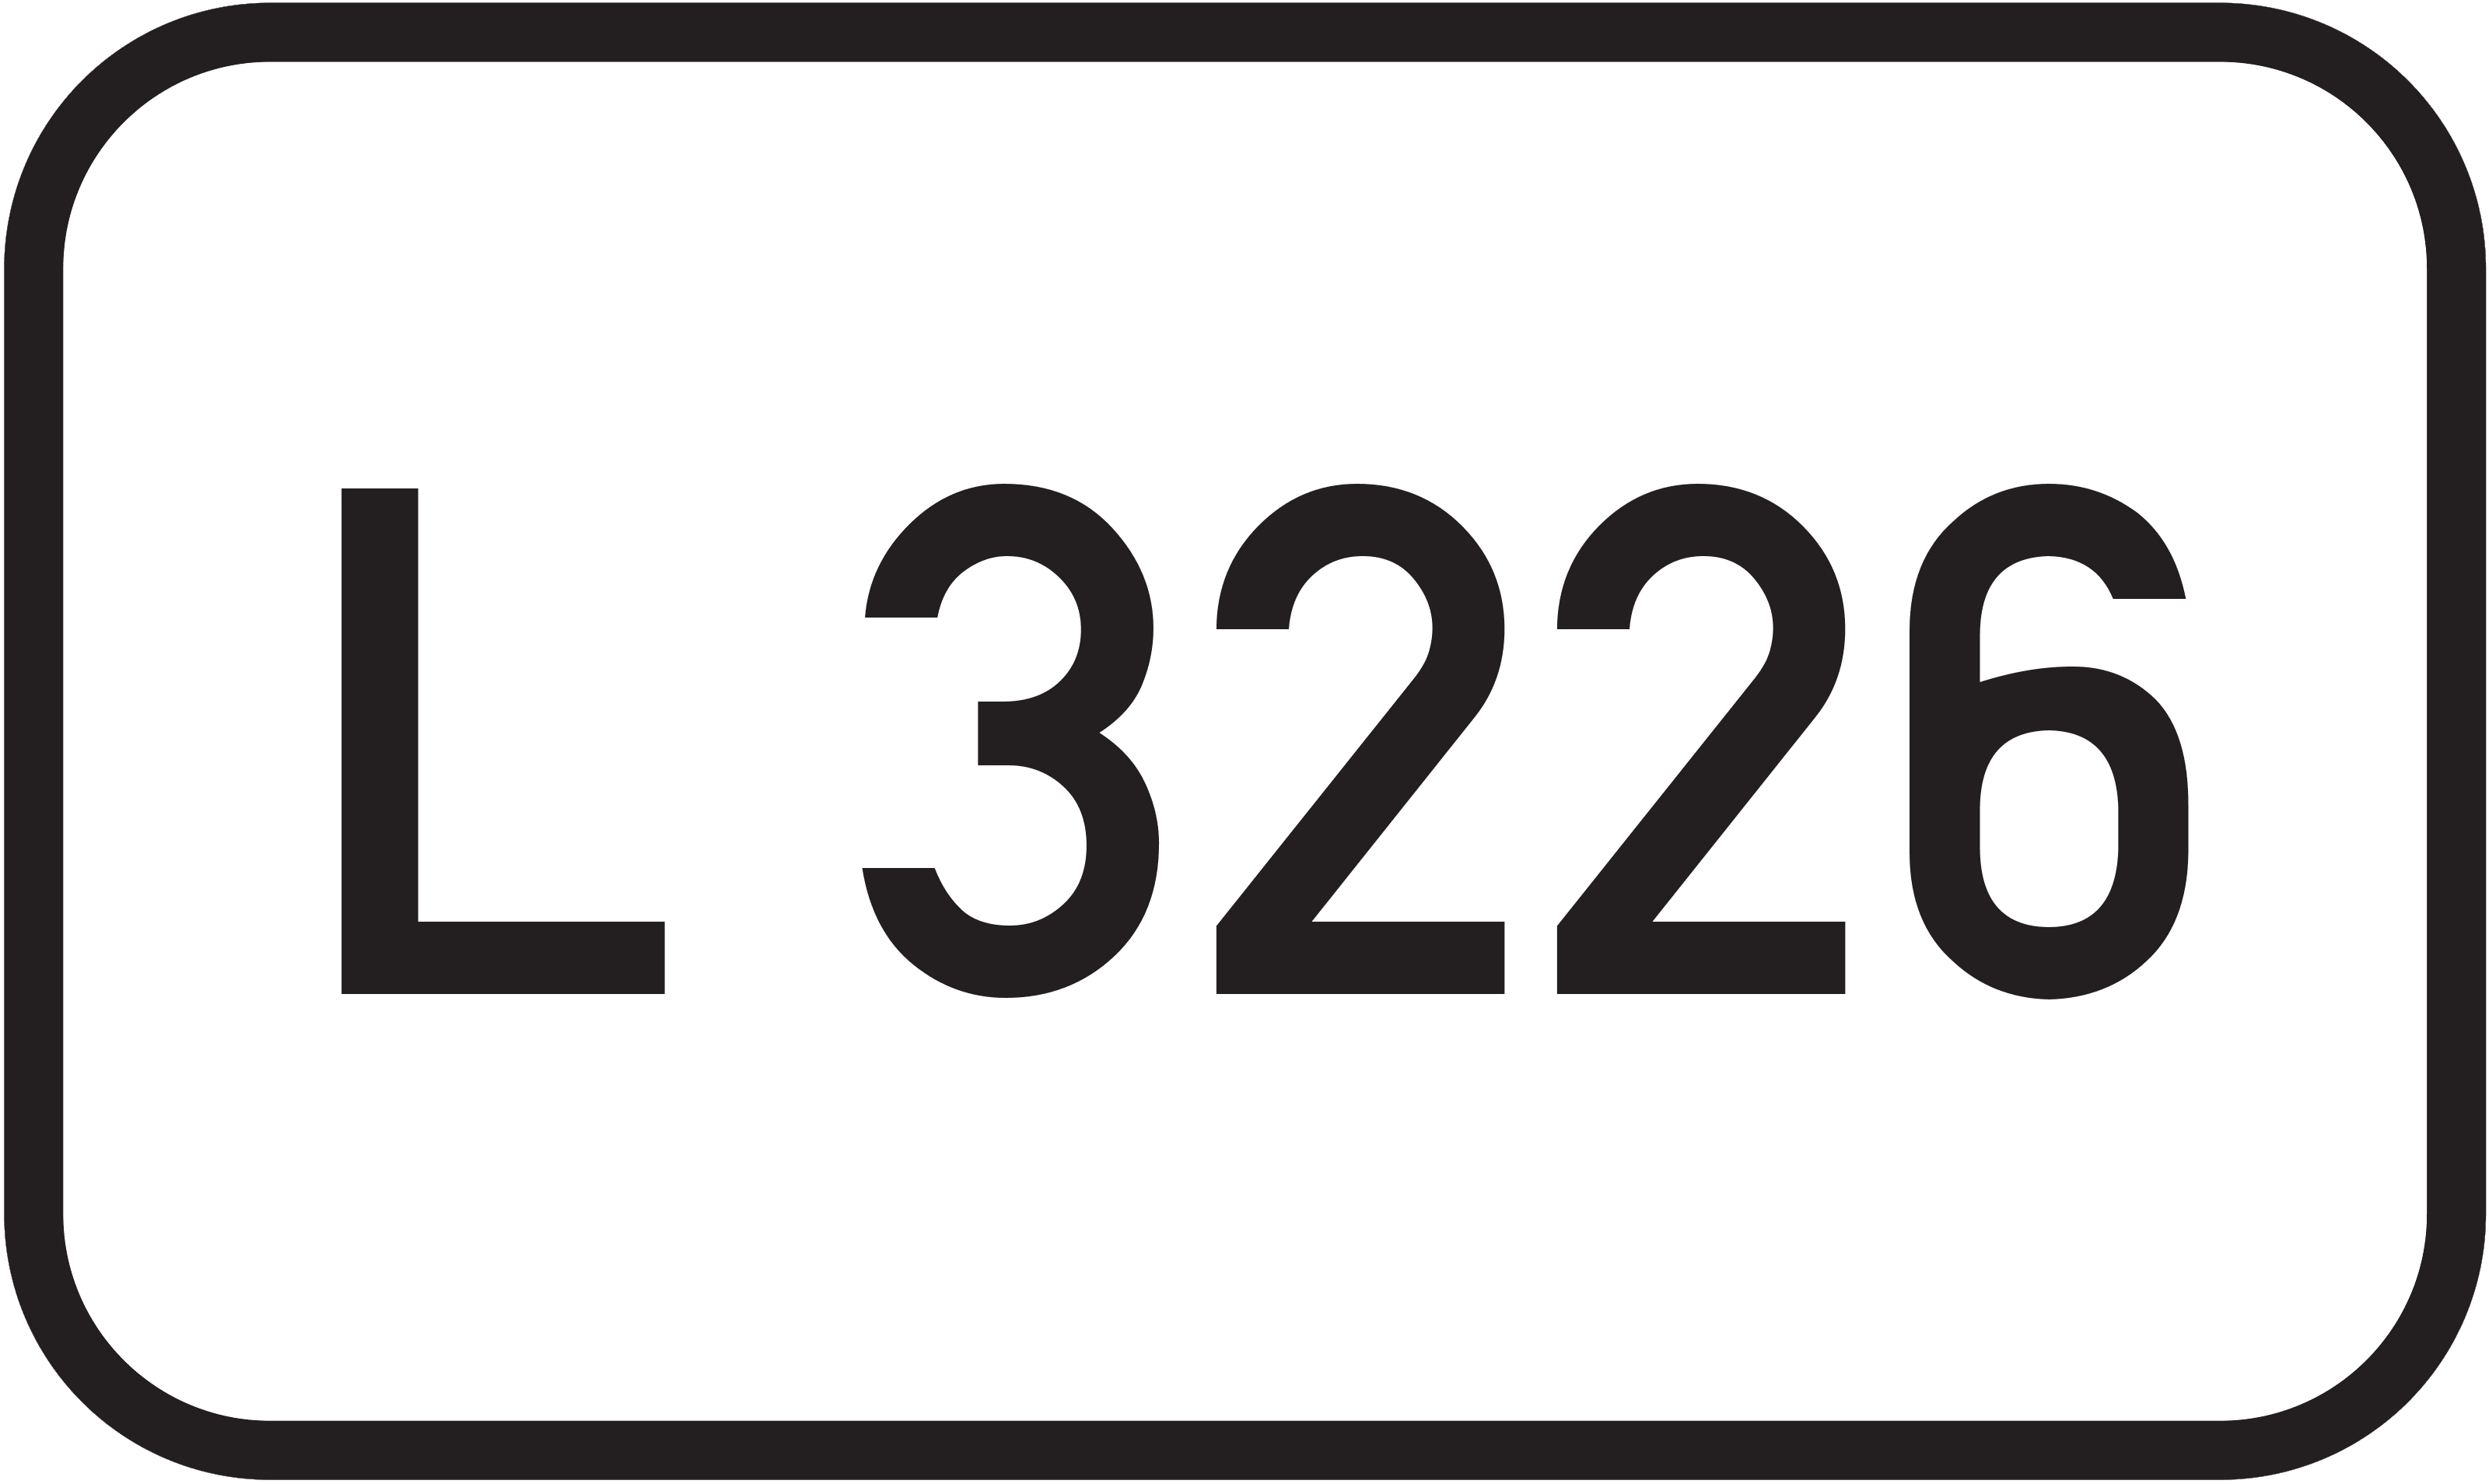 Landesstraße L 3226